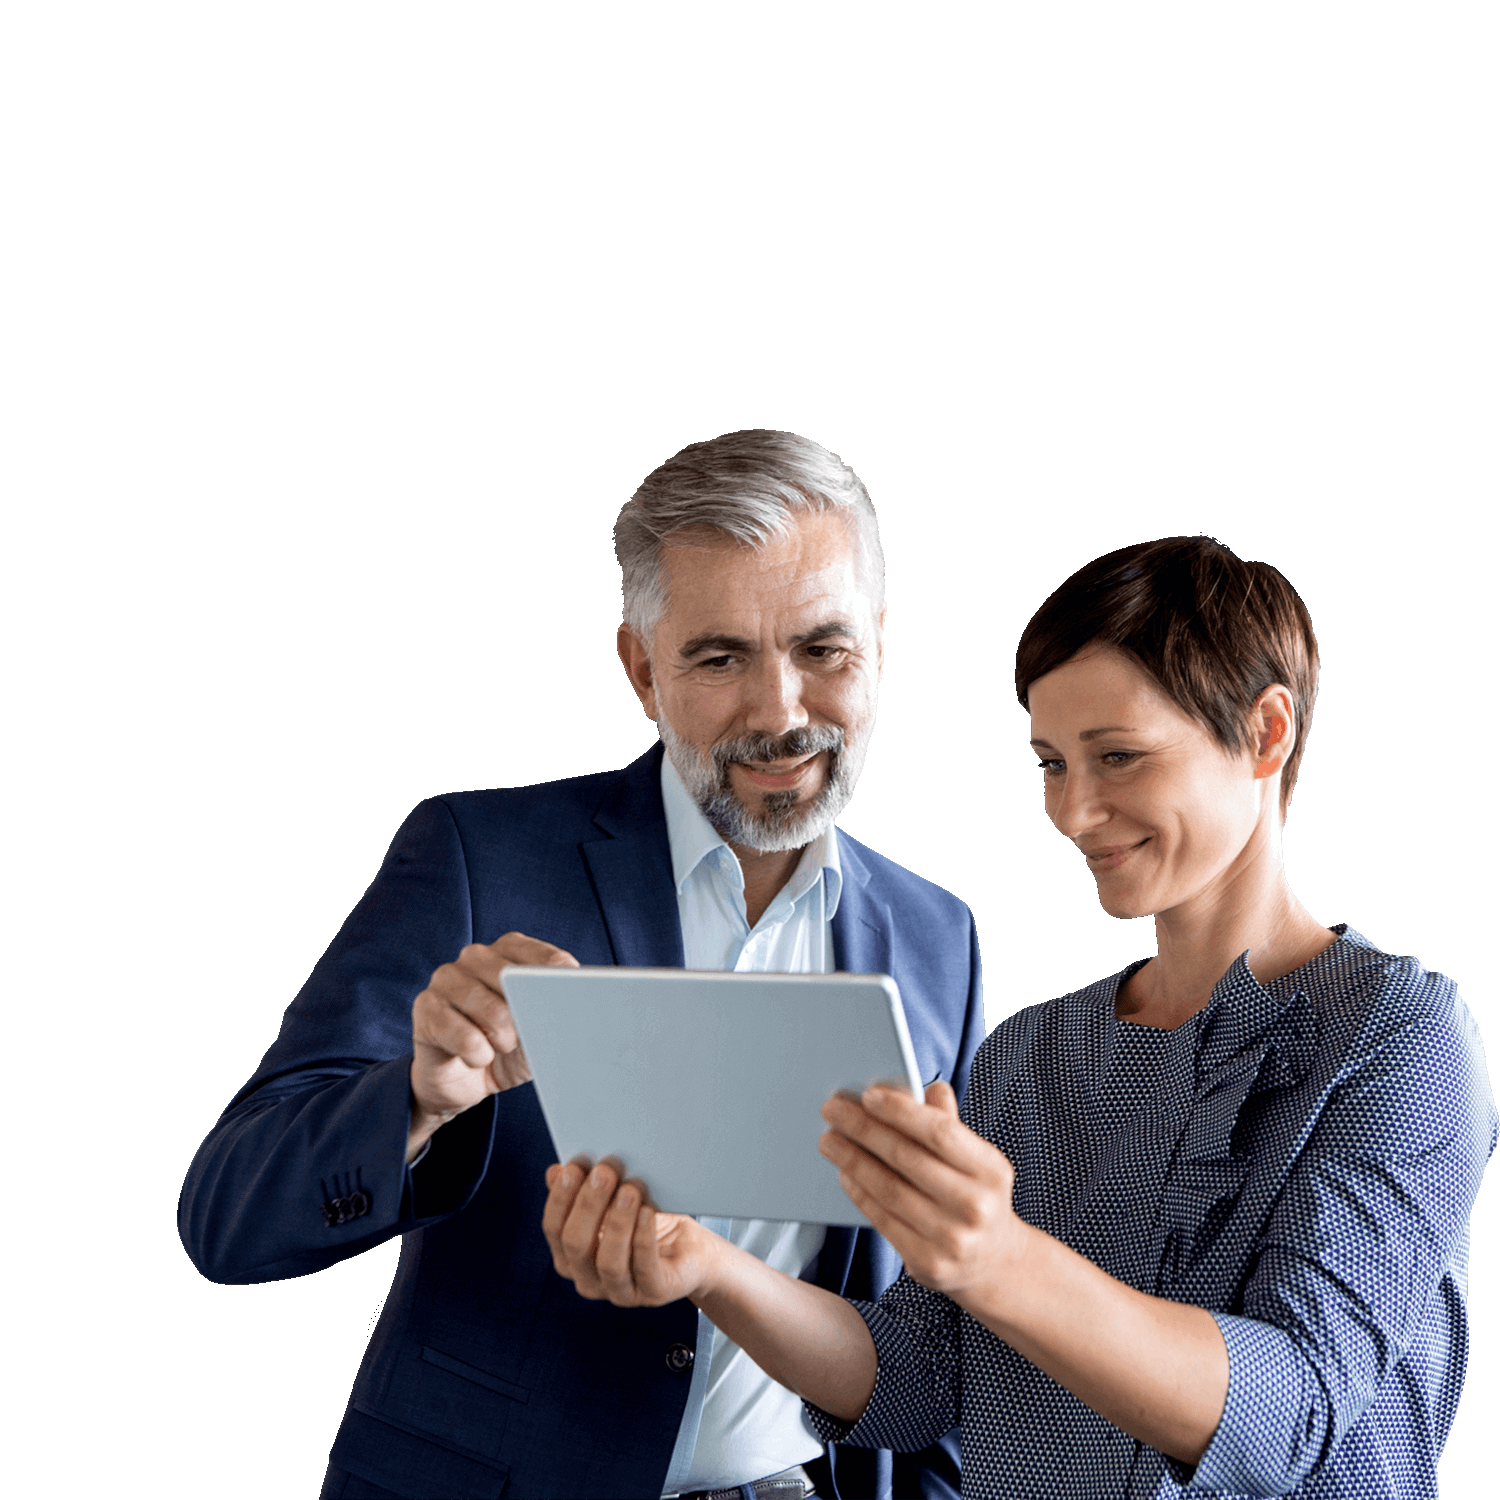 Homme et femme travaillant sur une tablette, symbolisant le secrétariat juridique de confiance offert par MEDIALEX.